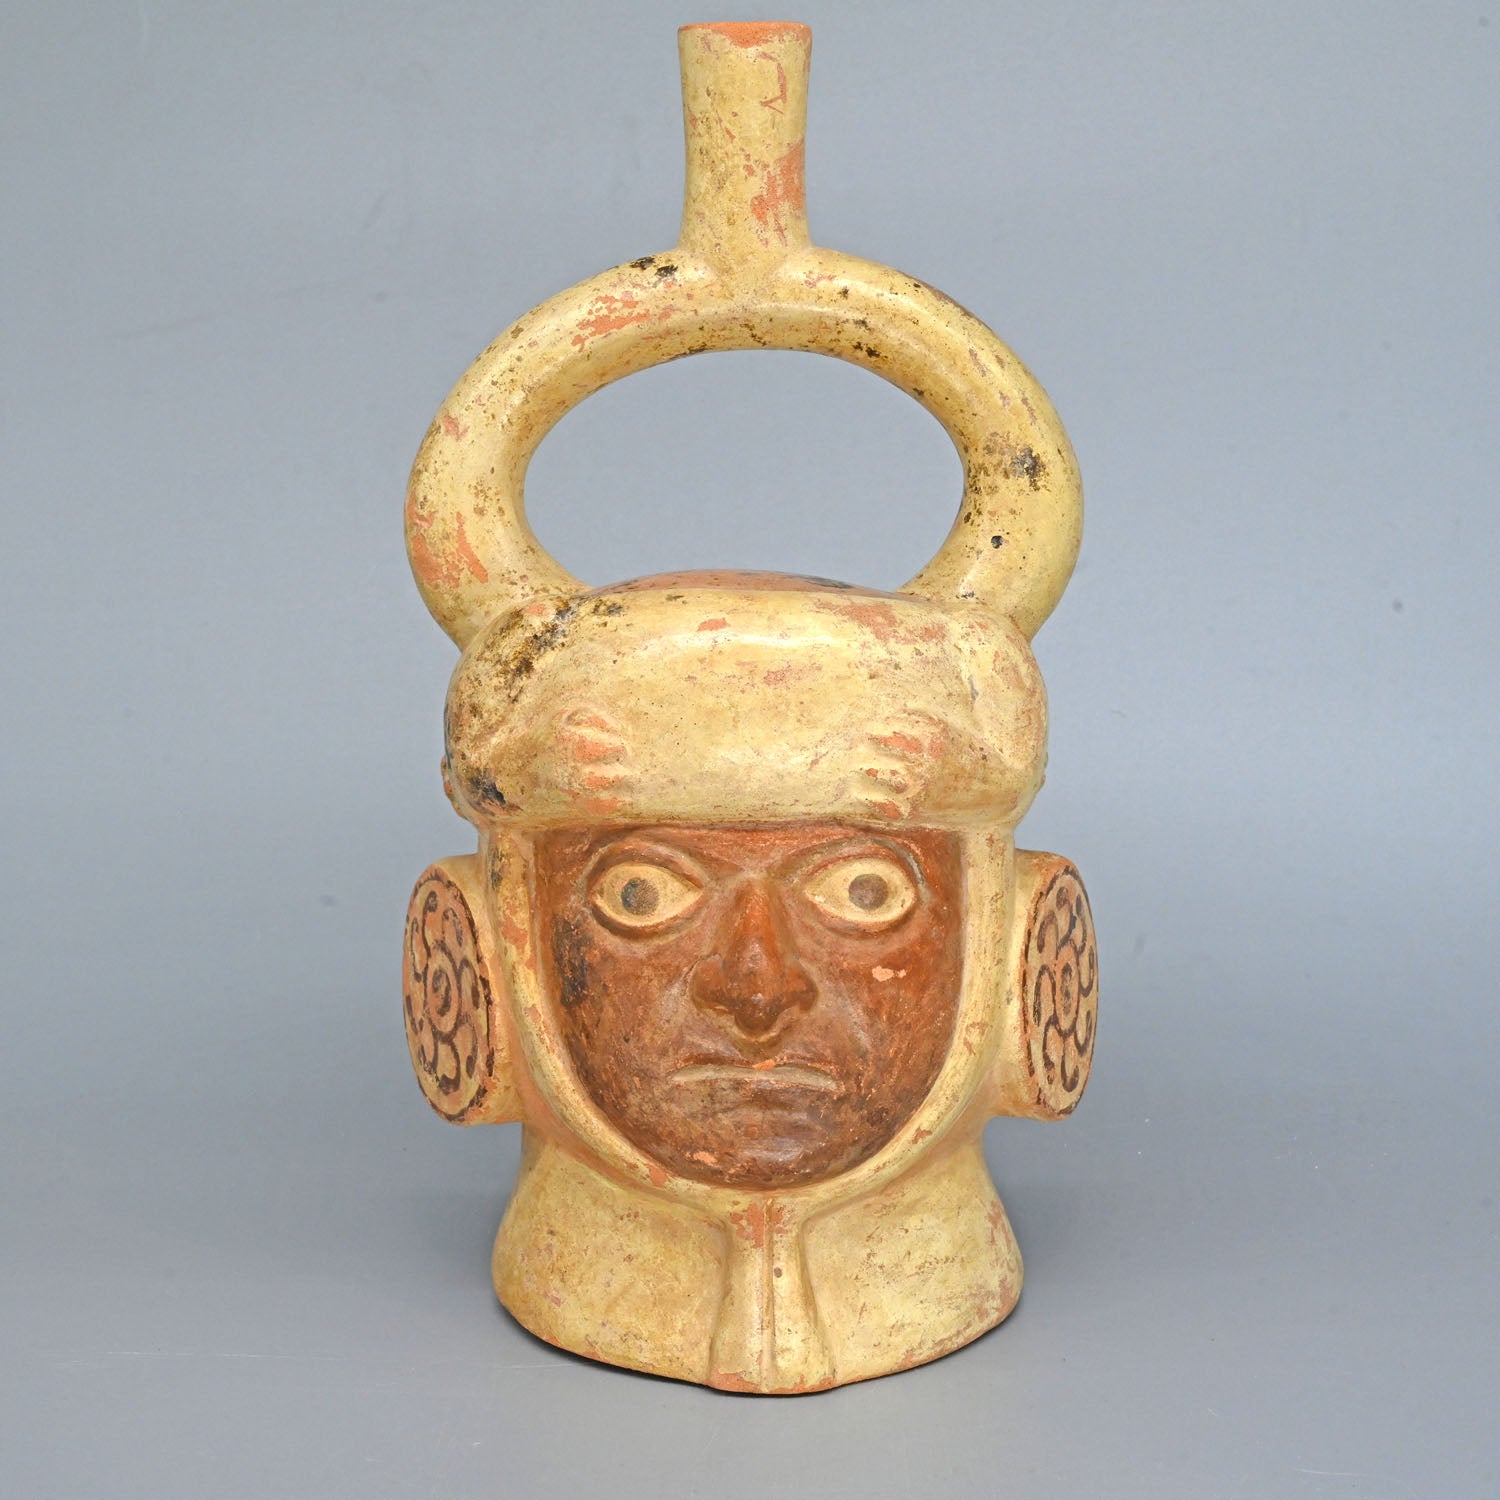 A Moche Stirrup Portrait Head Vessel, Moche III - V, ca. 500 - 800 CE